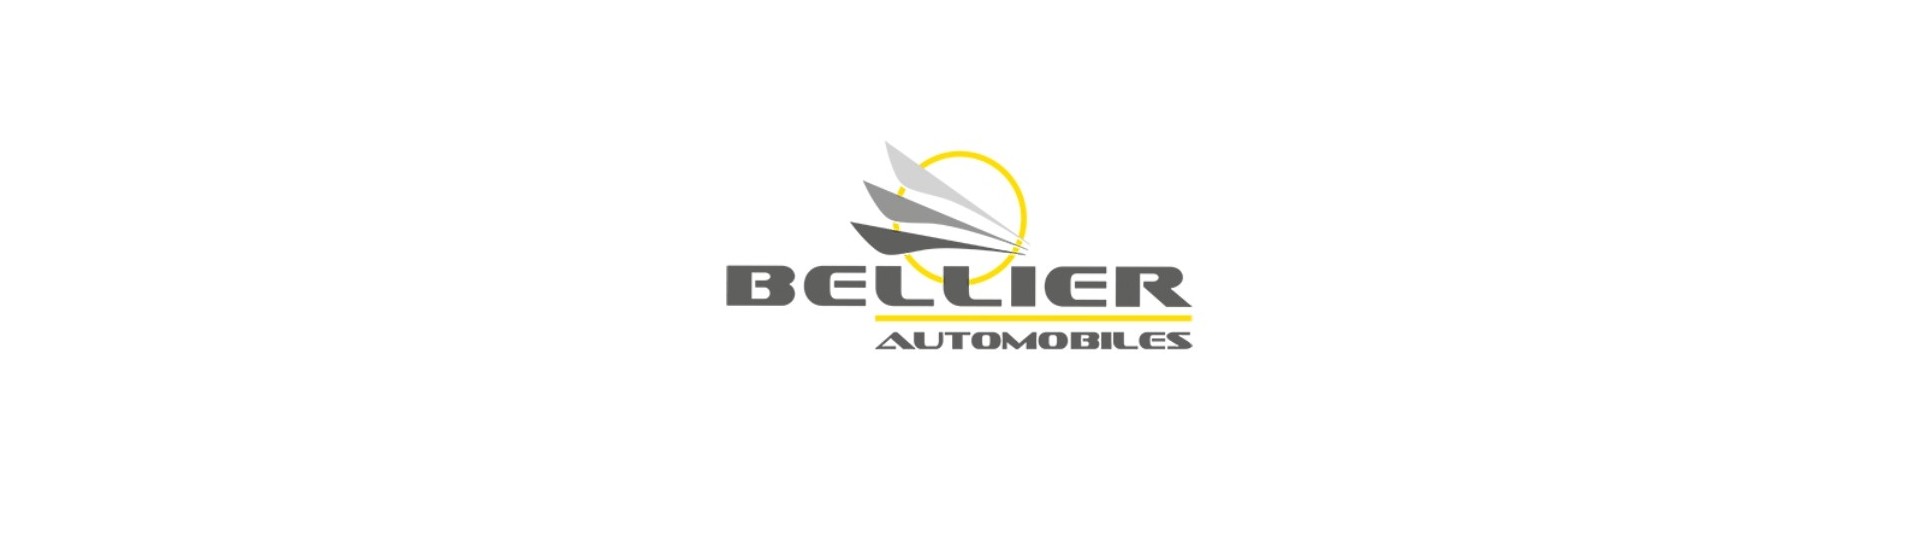 Rear la luz al mejor precio para el coche sin un permiso Bellier